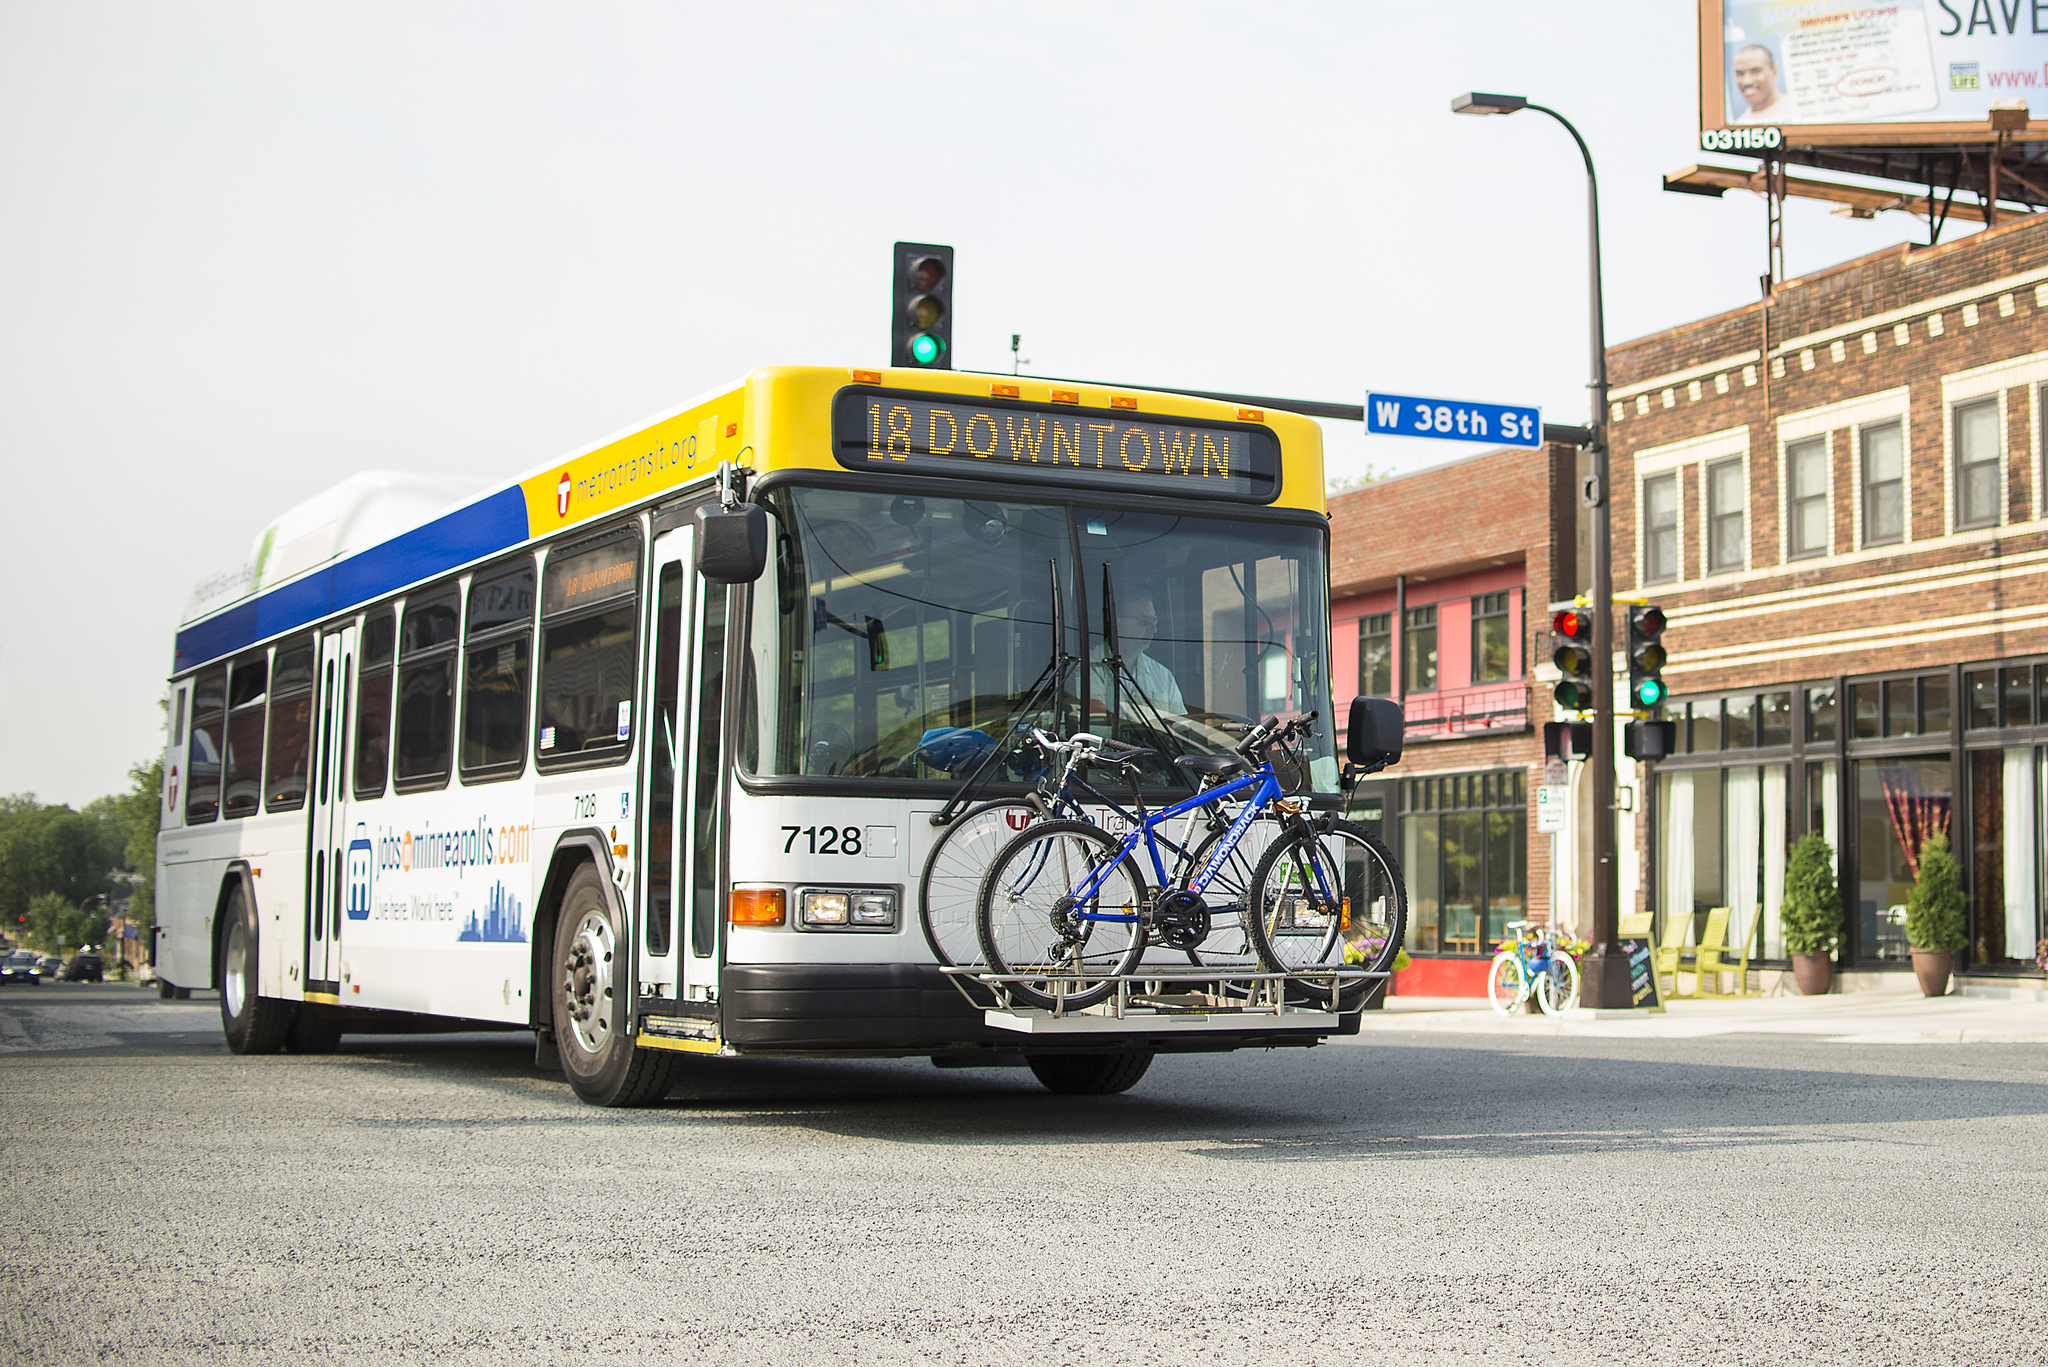 MetroTransit bus with bike on rack. Source: MetroTransit